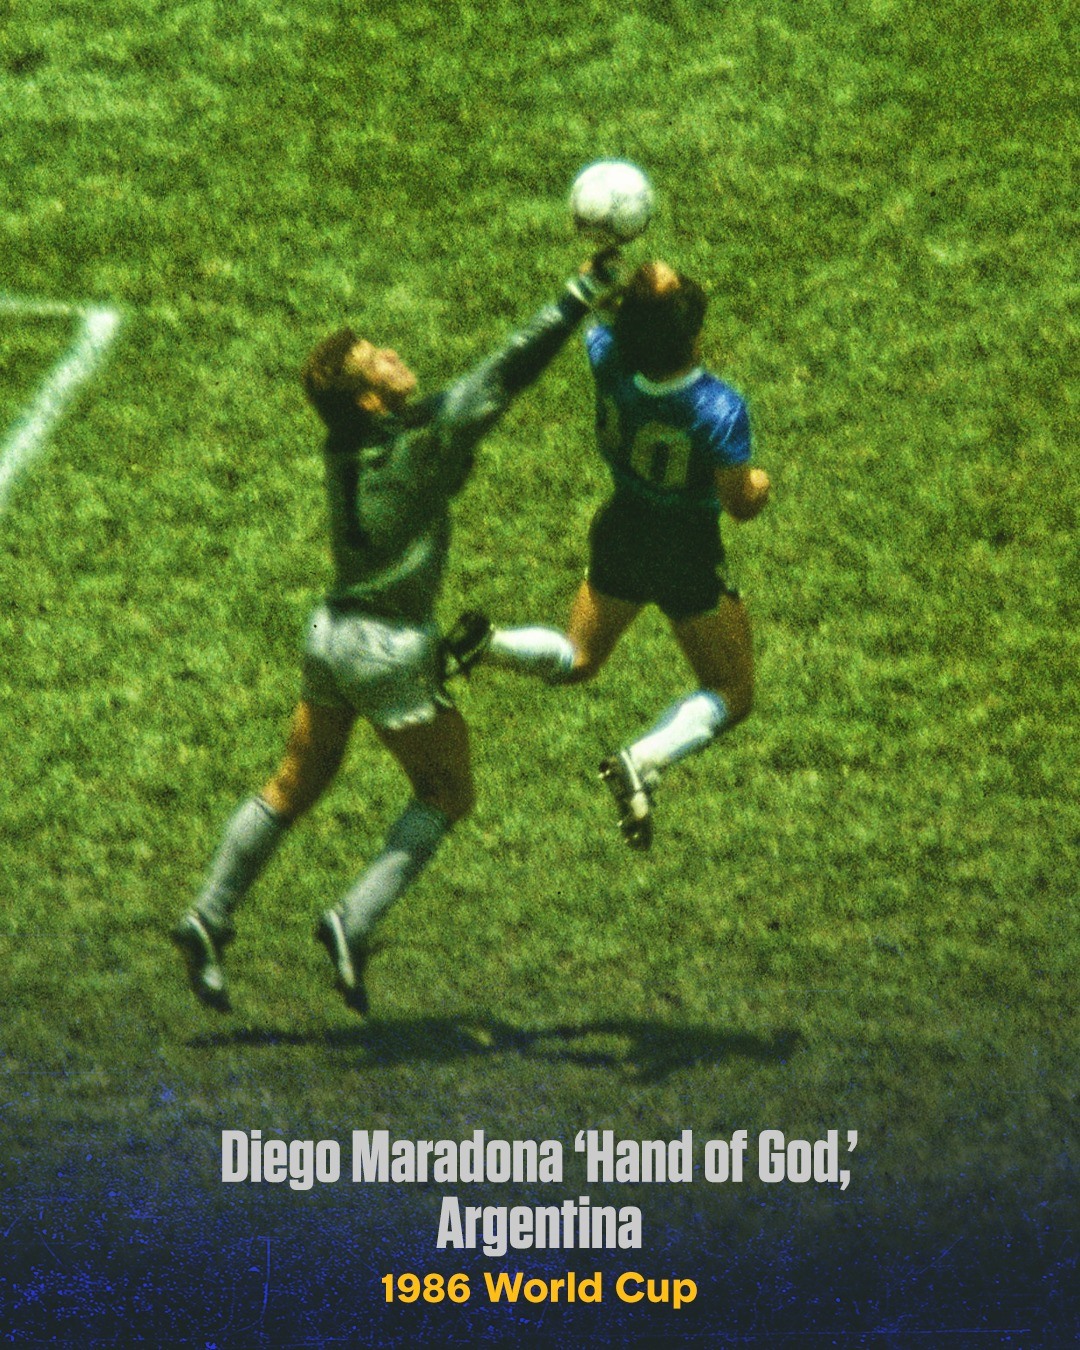 Cố danh thủ Diego Maradona ghi bàn thắng bằng tay vào lưới tuyển Anh, ở trận Argentina thắng Anh 2-1 tại tứ kết World Cup 1986. Đây là bàn thắng tai tiếng nhất lịch sử. Về sau Maradona nói rằng pha lập công được ông thực hiện bằng “bàn tay của Chúa“.